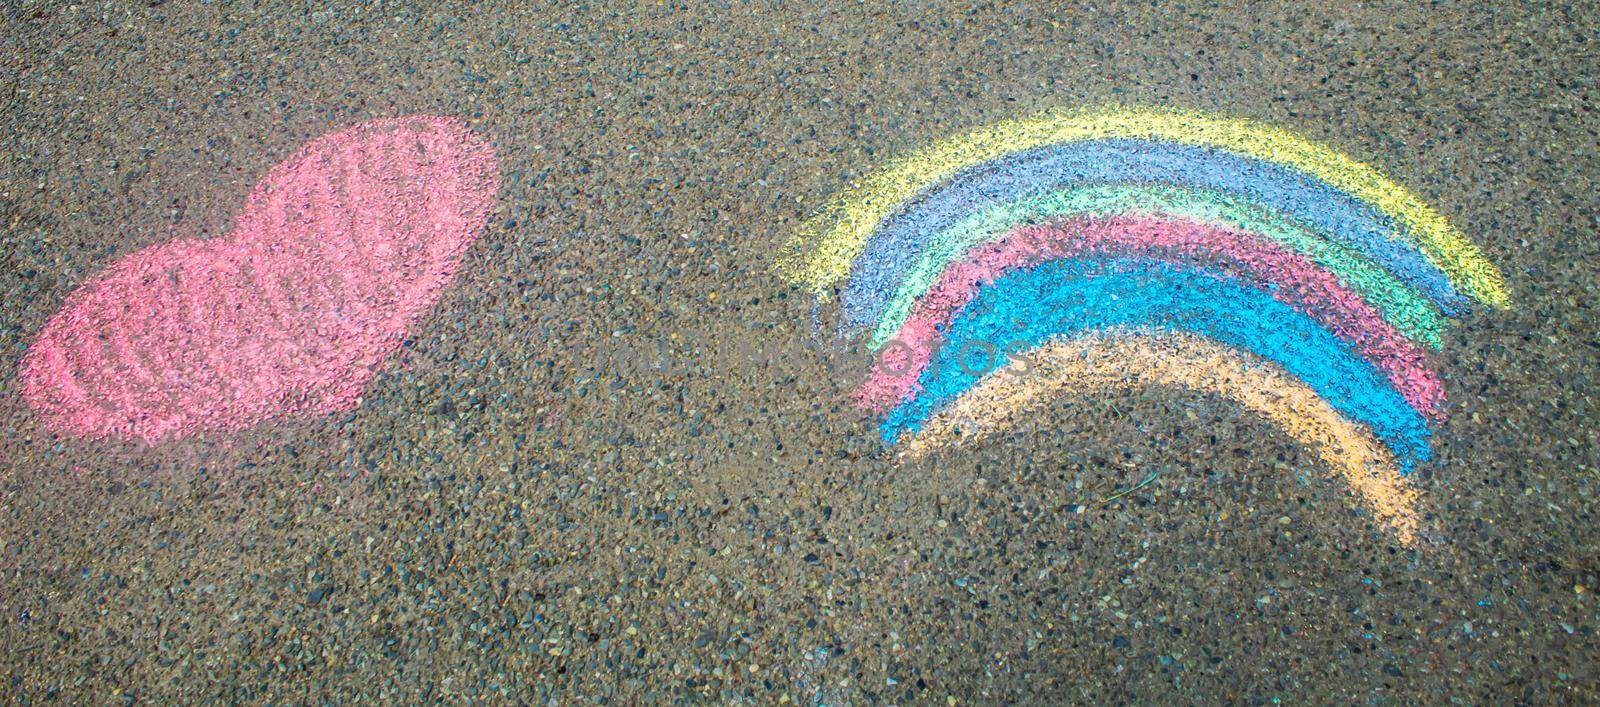 Children paint a rainbow on the asphalt. Selective focus. by mila1784